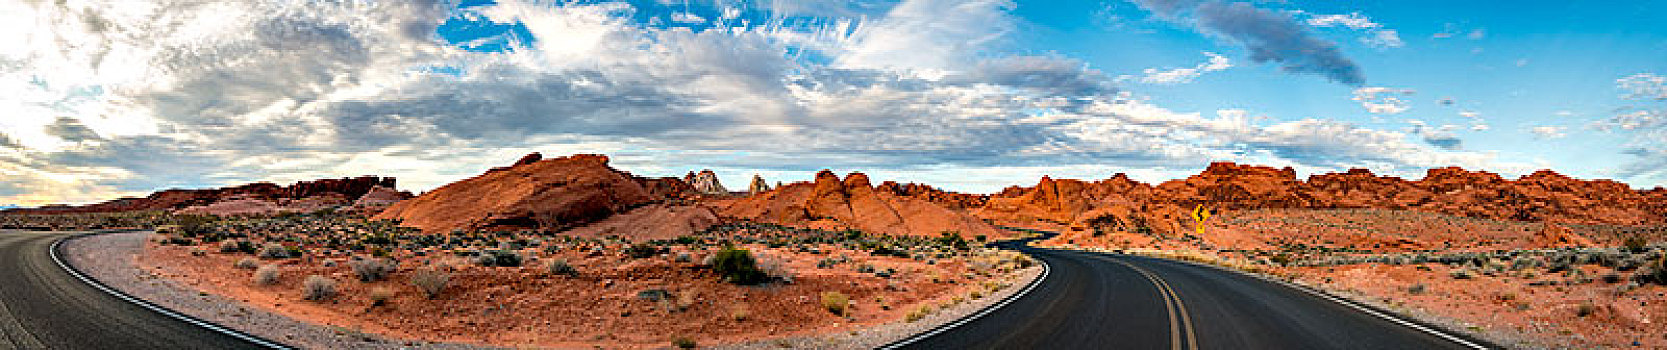 道路,红色,沙岩构造,山谷,莫哈维沙漠,内华达,美国,北美